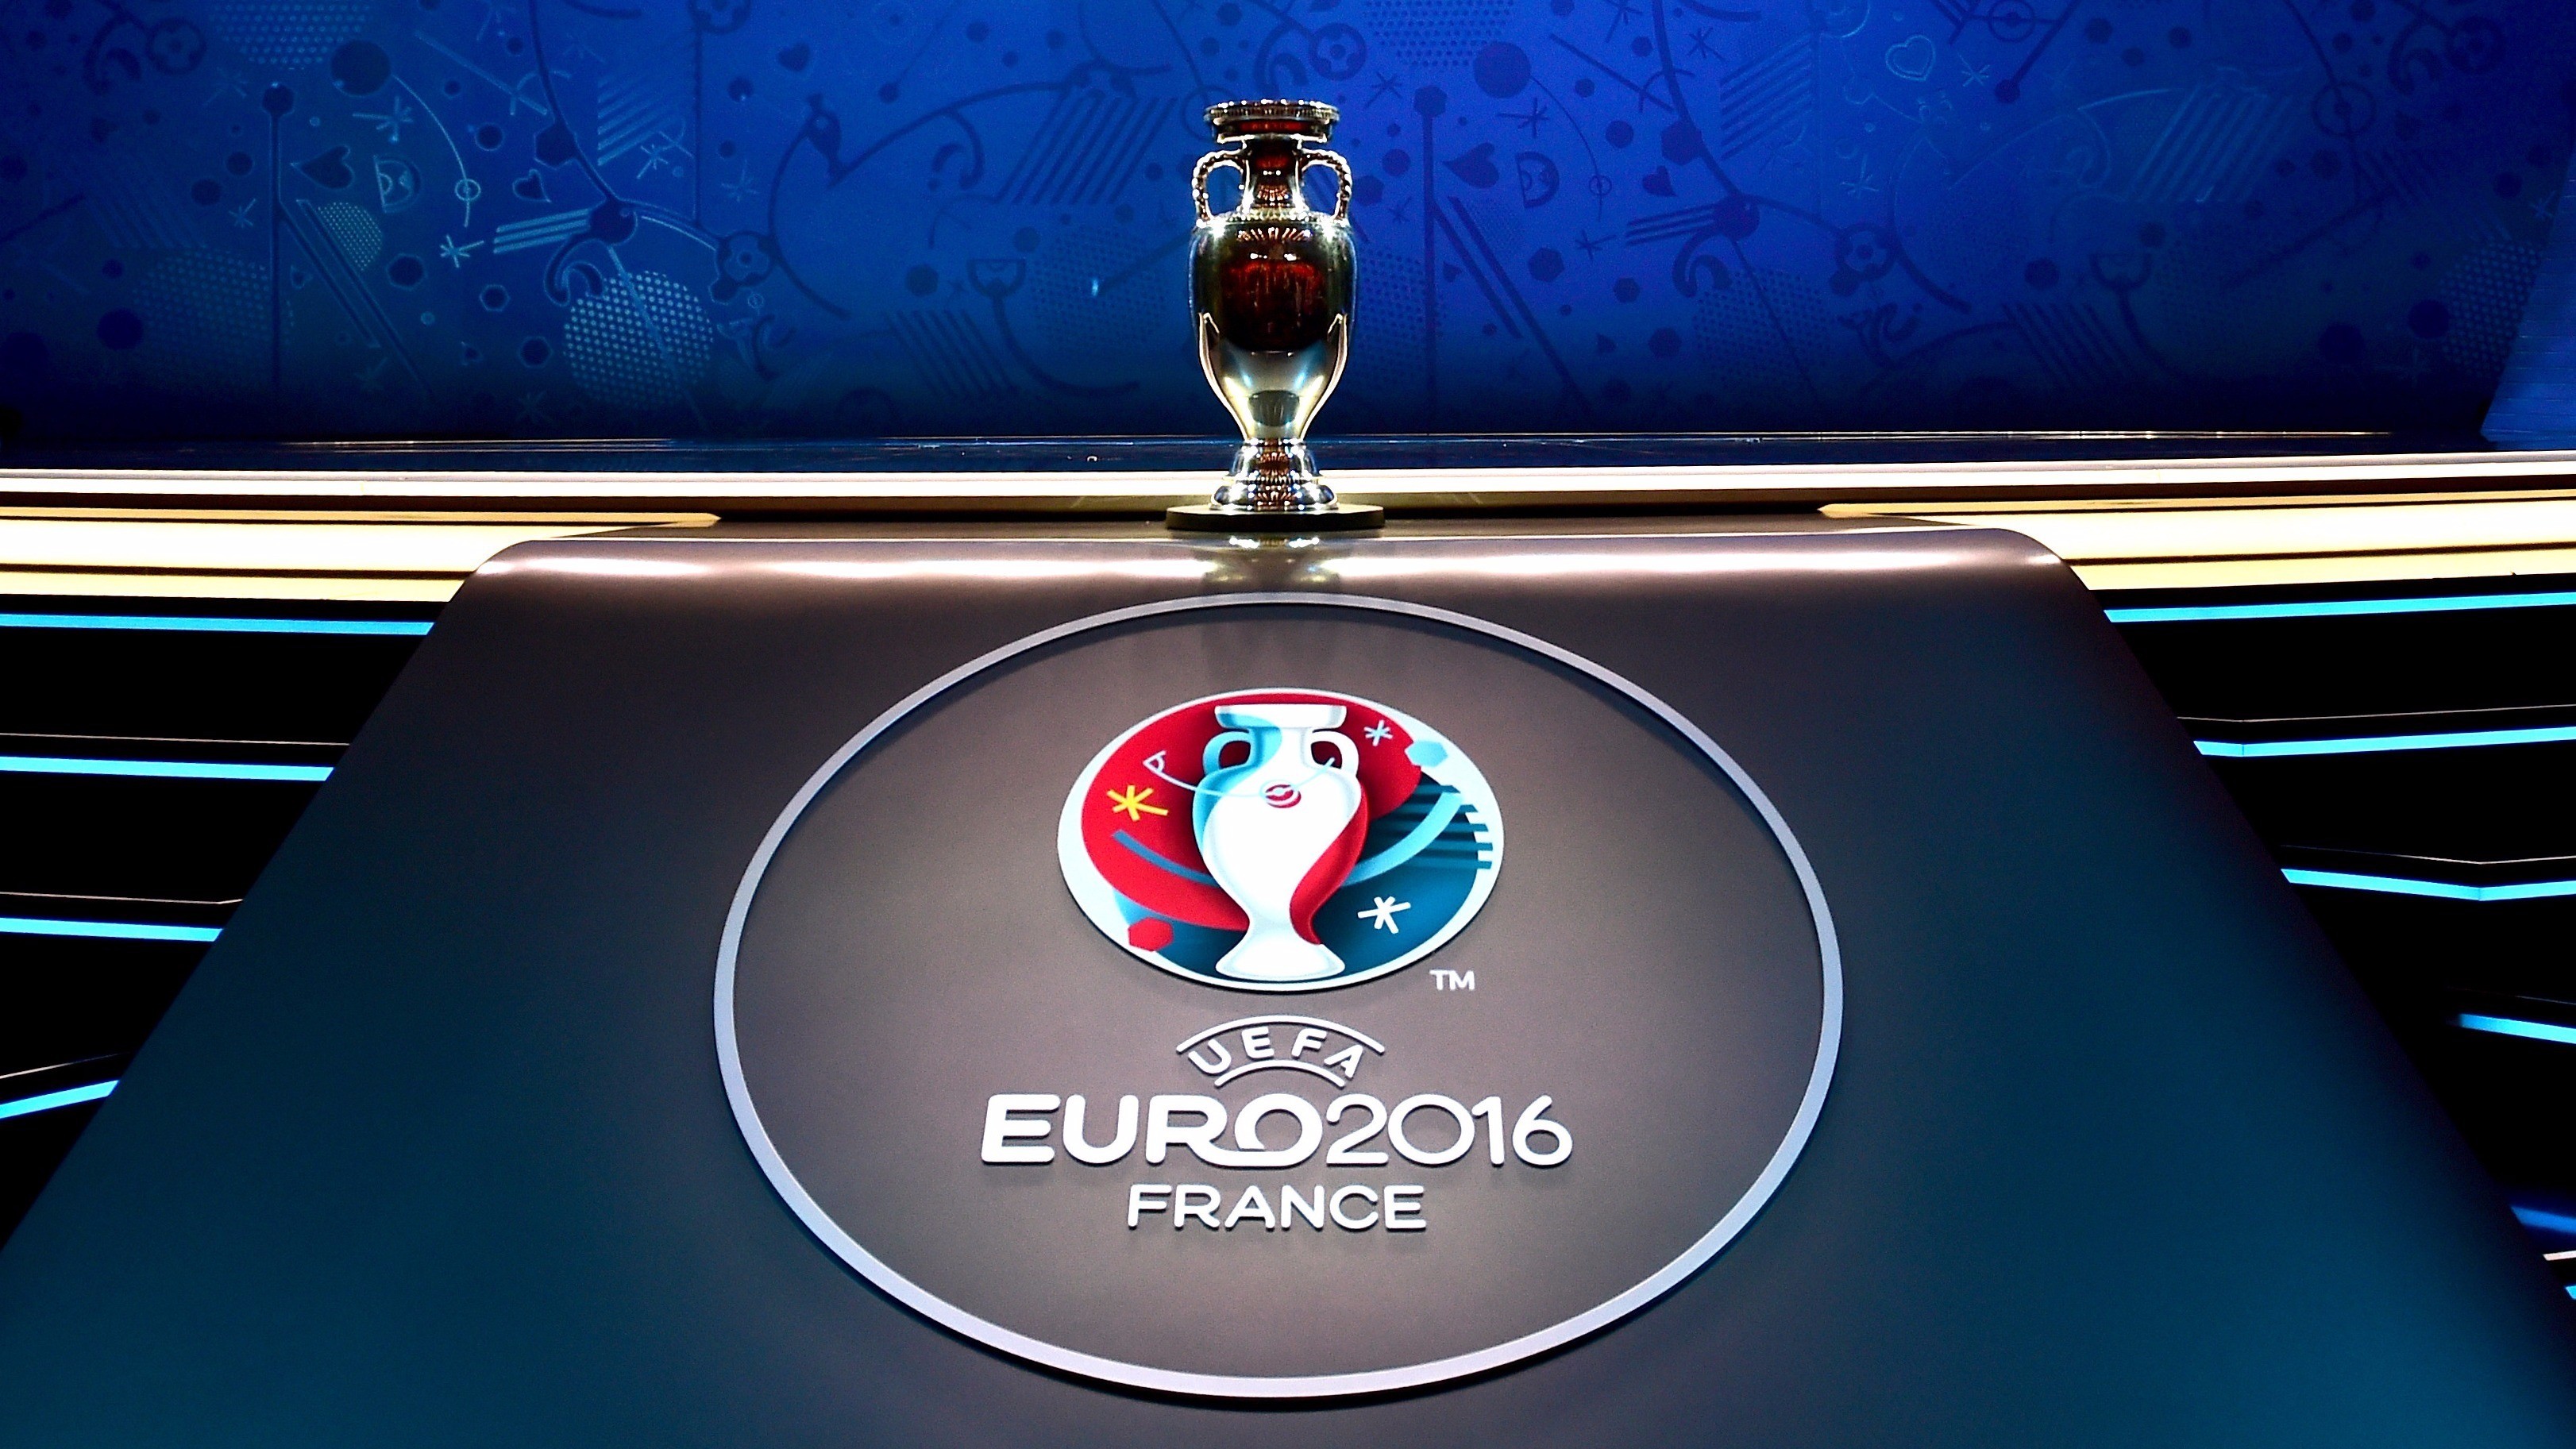 Скачать обои Евро 2016 на телефон бесплатно